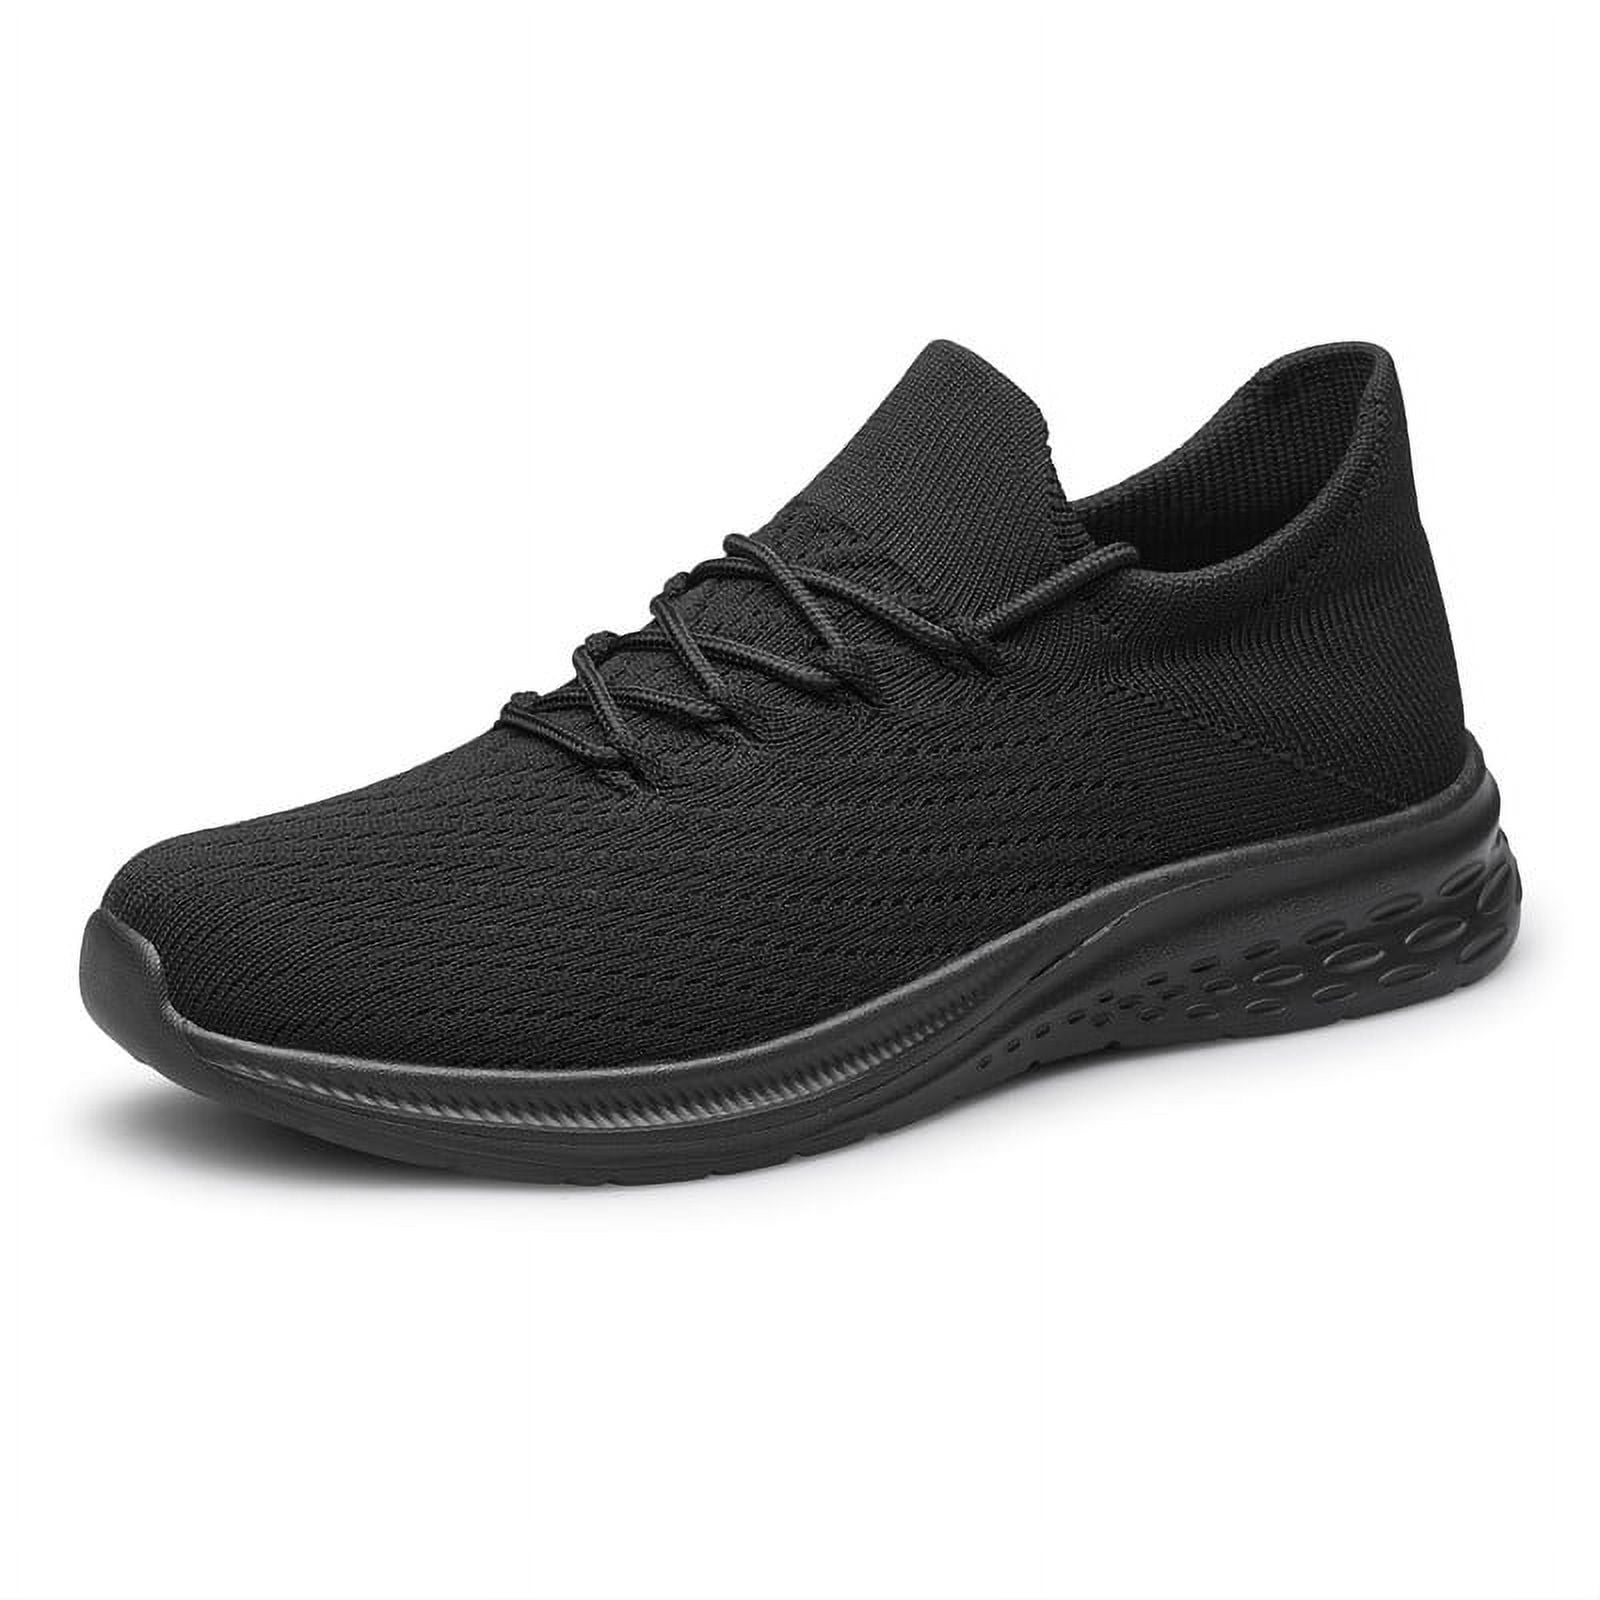 Mens Slip On Walking Shoes Lightweight Breathable Non Slip Running ...